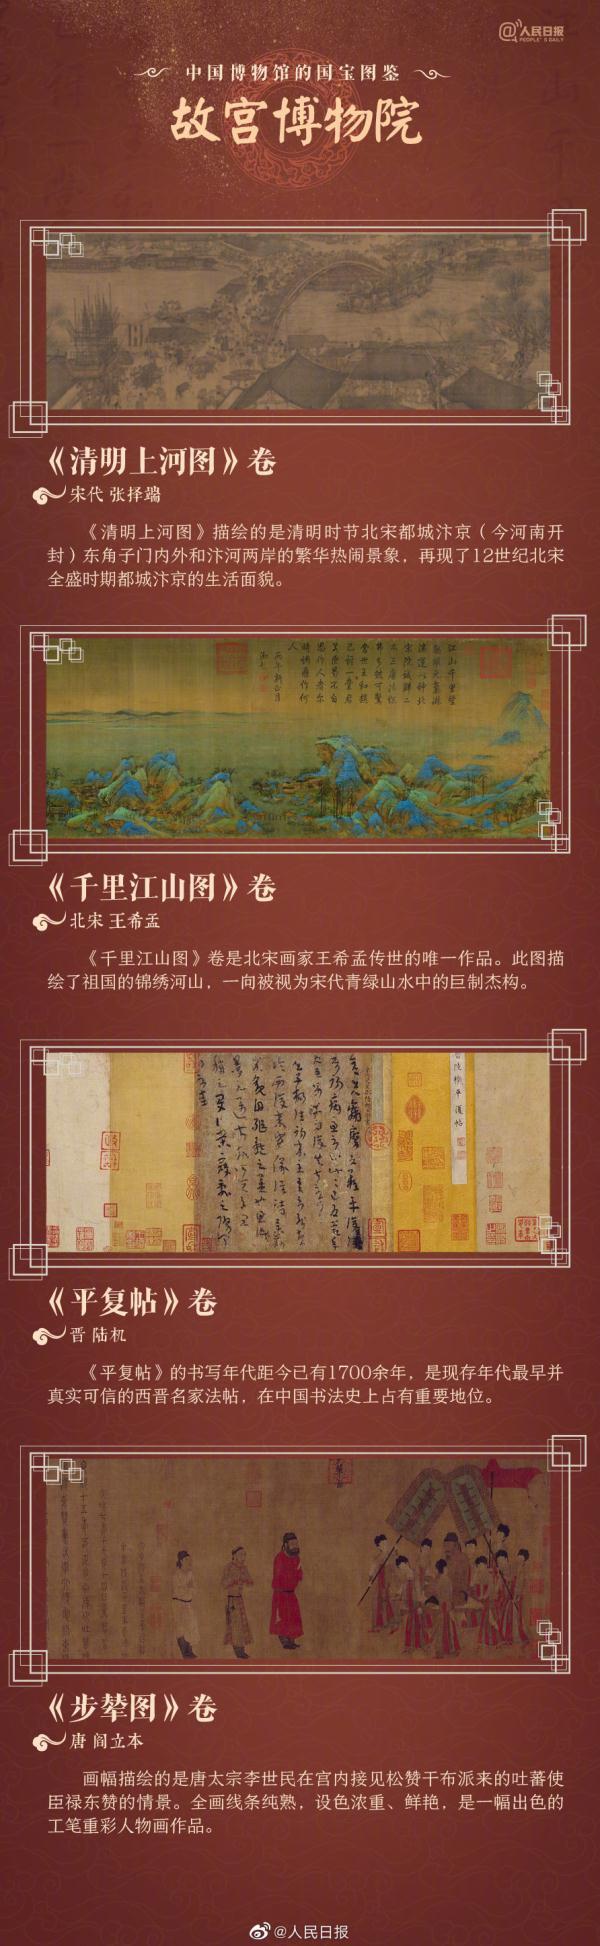 中国博物馆的国宝图鉴 36件国宝：武则天金简、越王勾践剑……